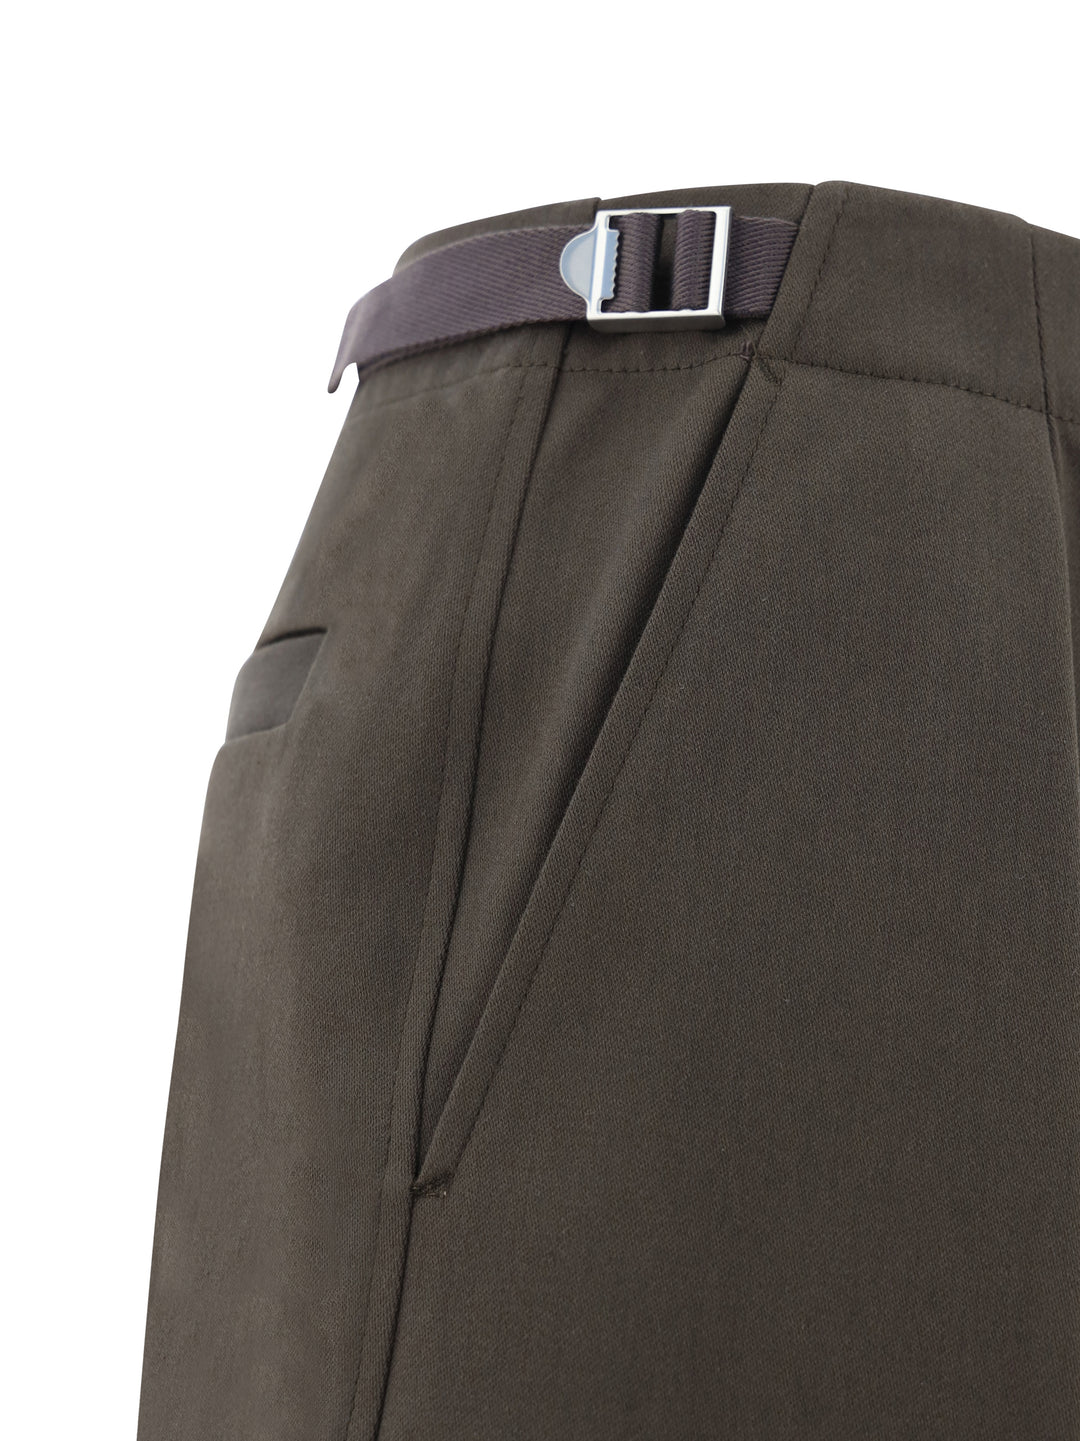 Pantalone in cotone con cinturini laterali regolabili